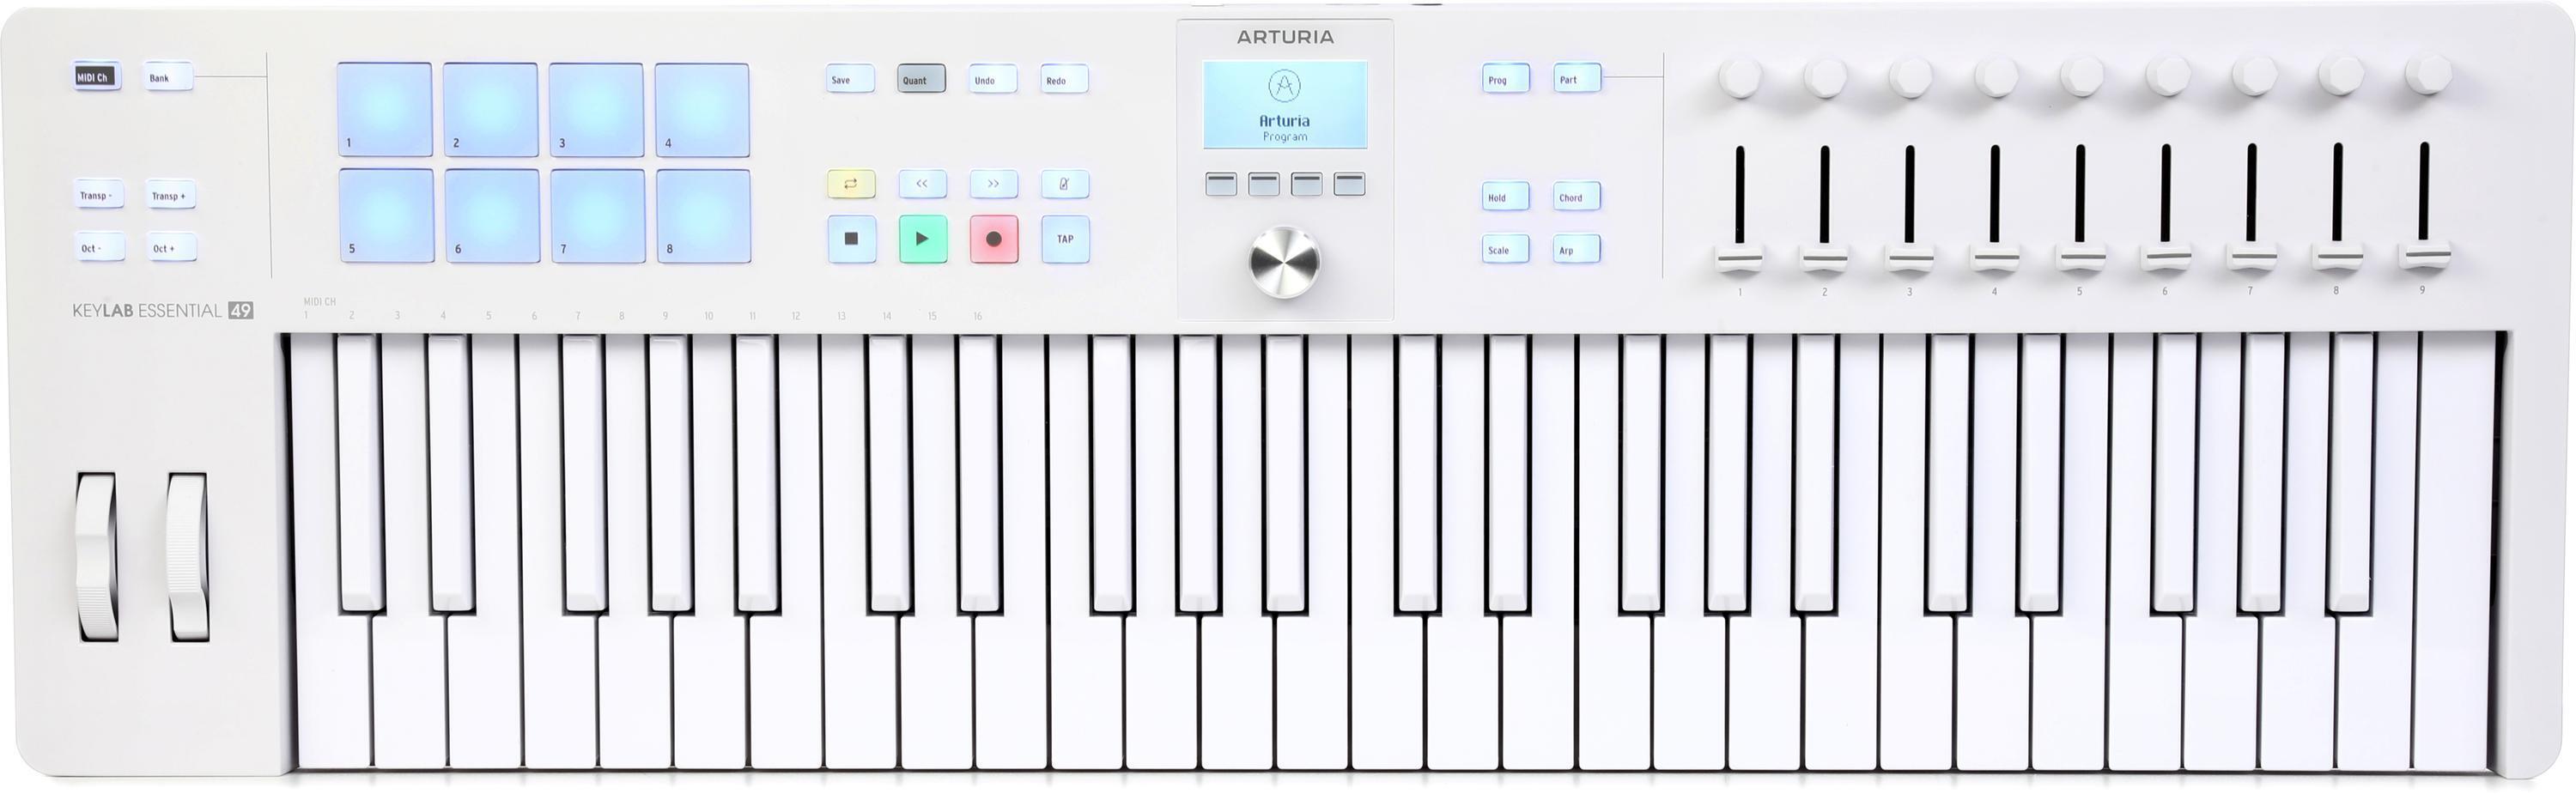 Arturia KeyLab Essential mk3 49-key Keyboard Controller - Alpine White